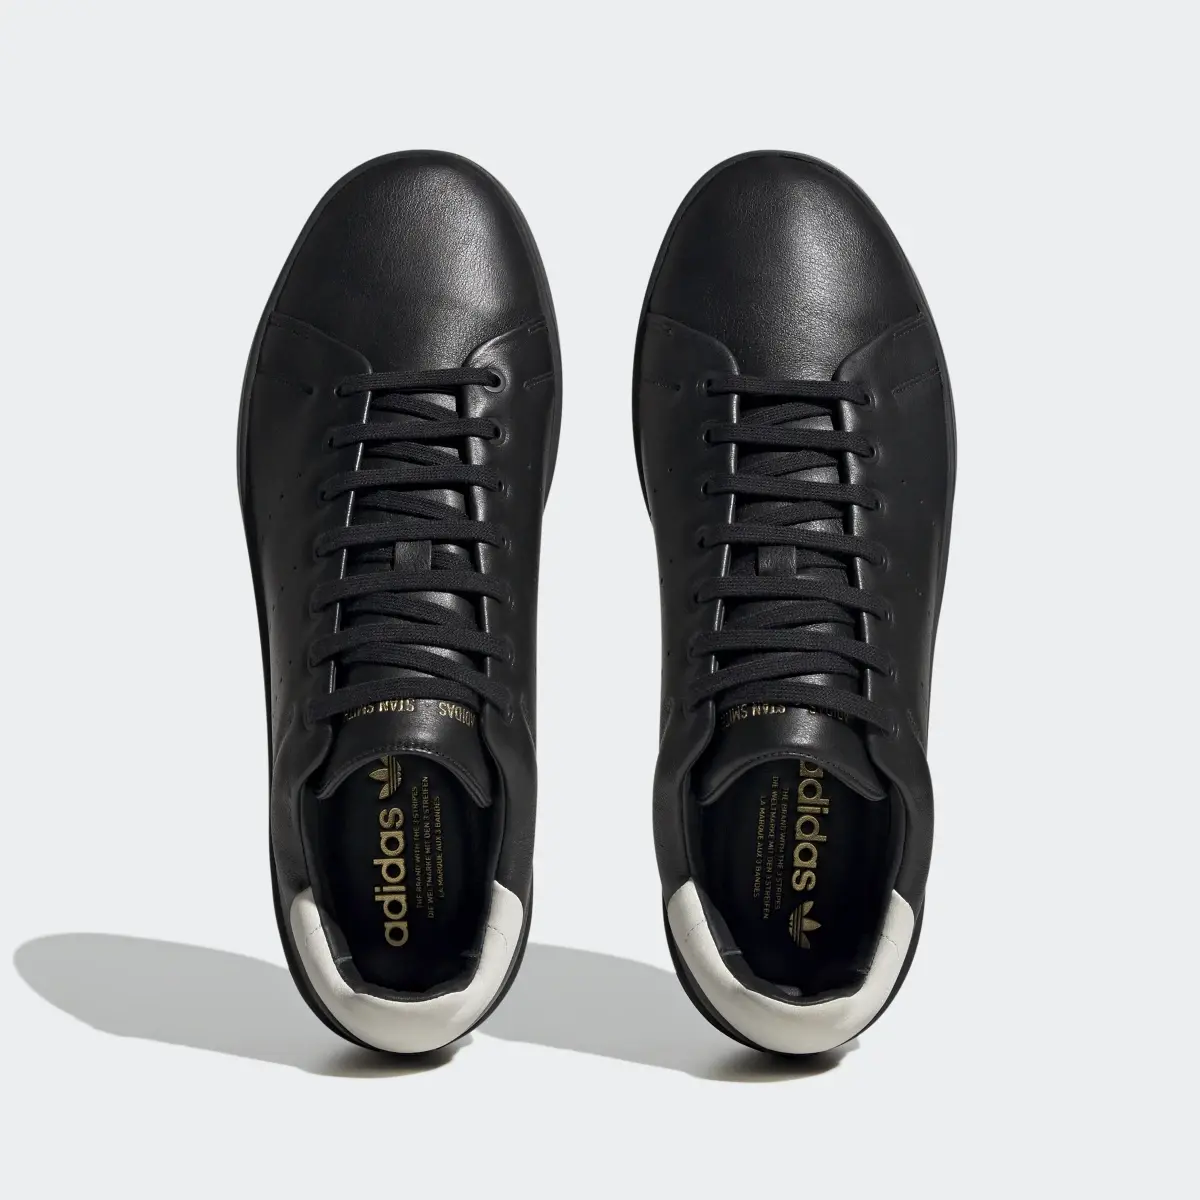 Adidas Stan Smith Recon Schuh. 3